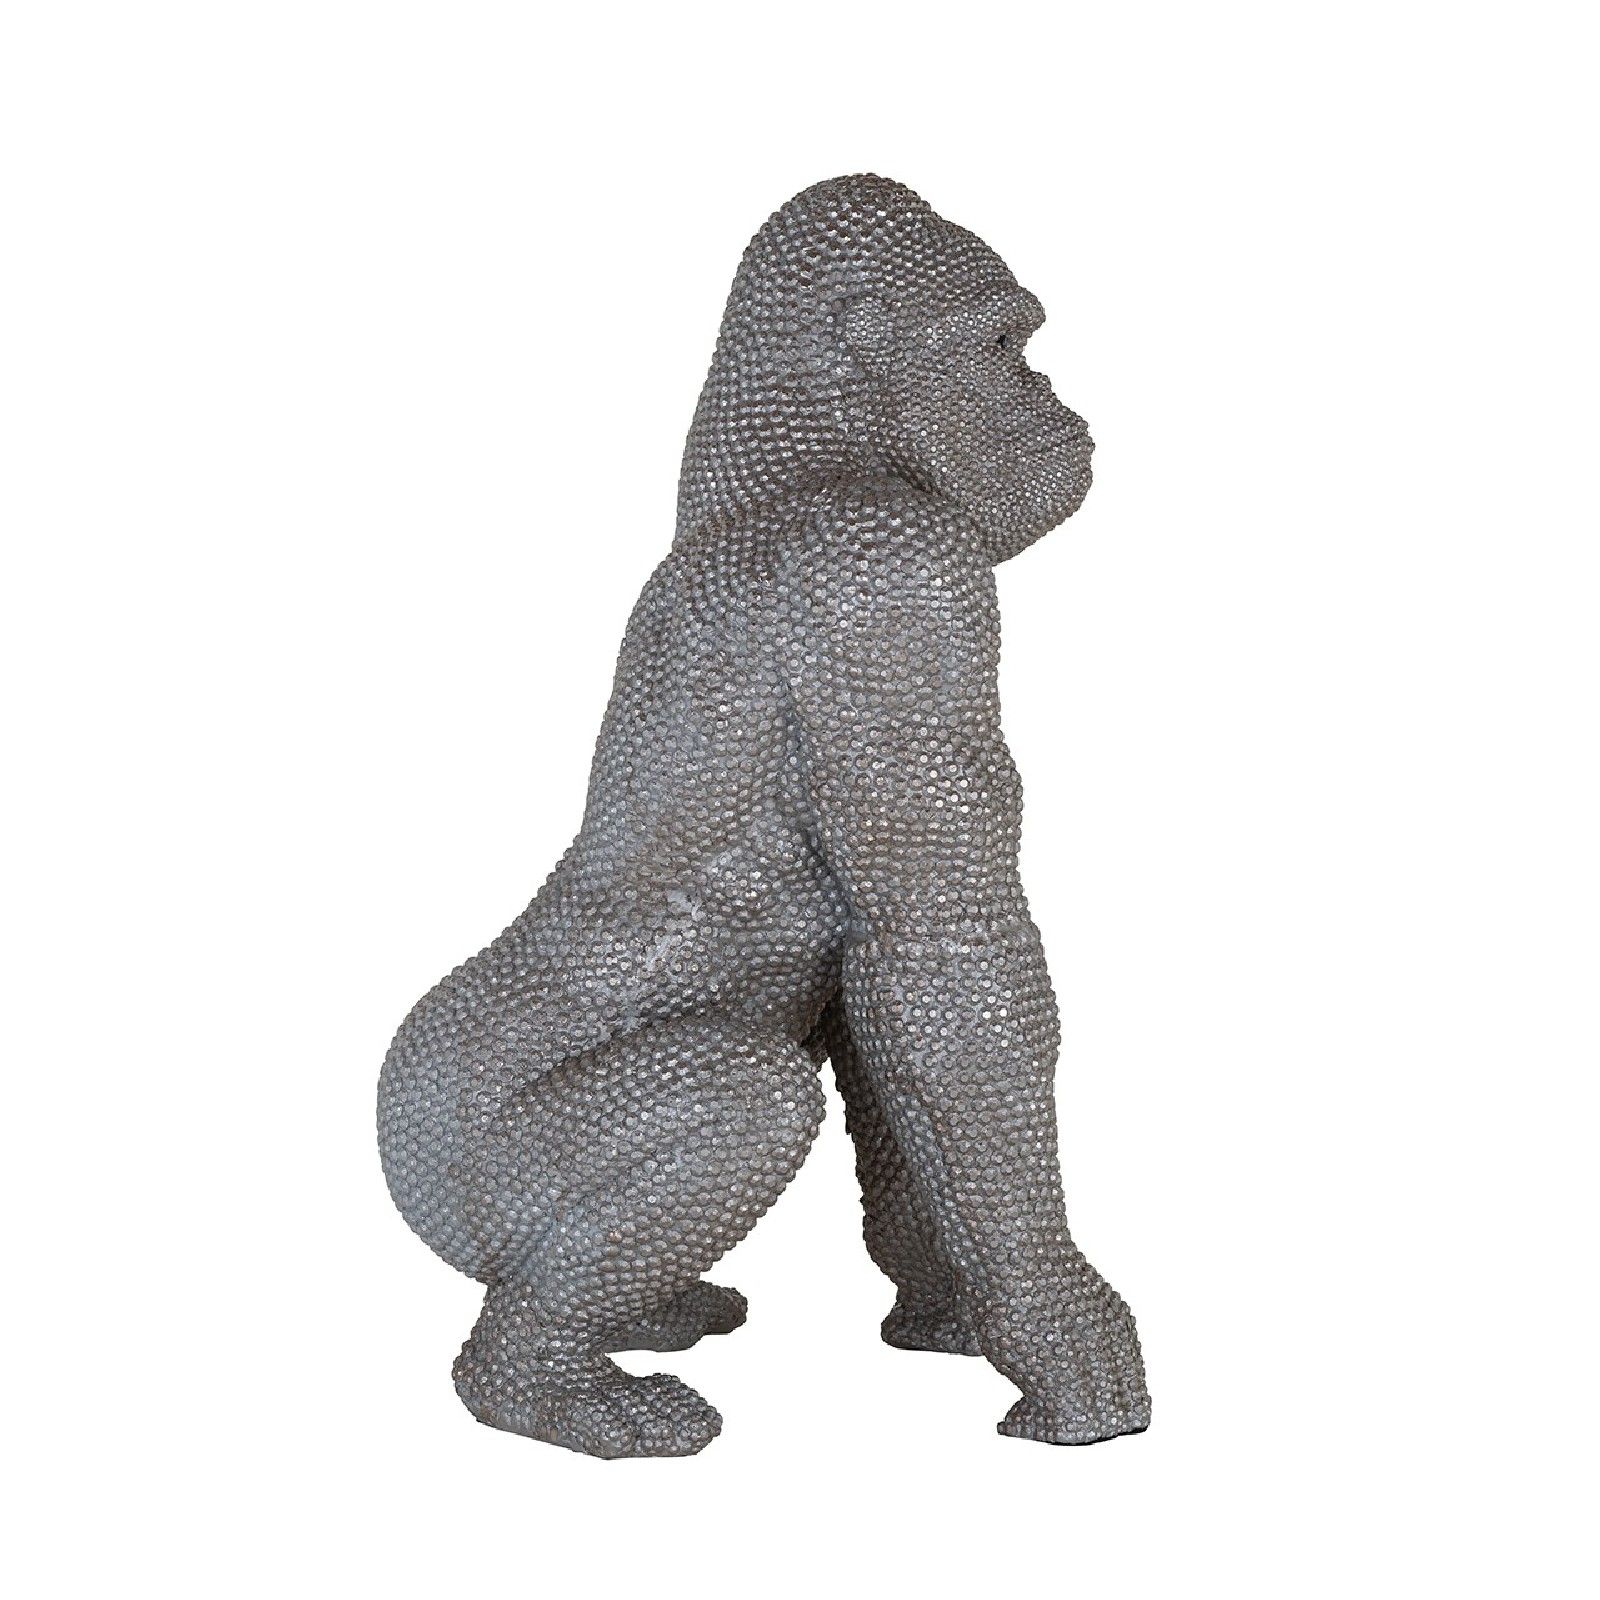 Art decoration Gorilla Figures décoratives - 129